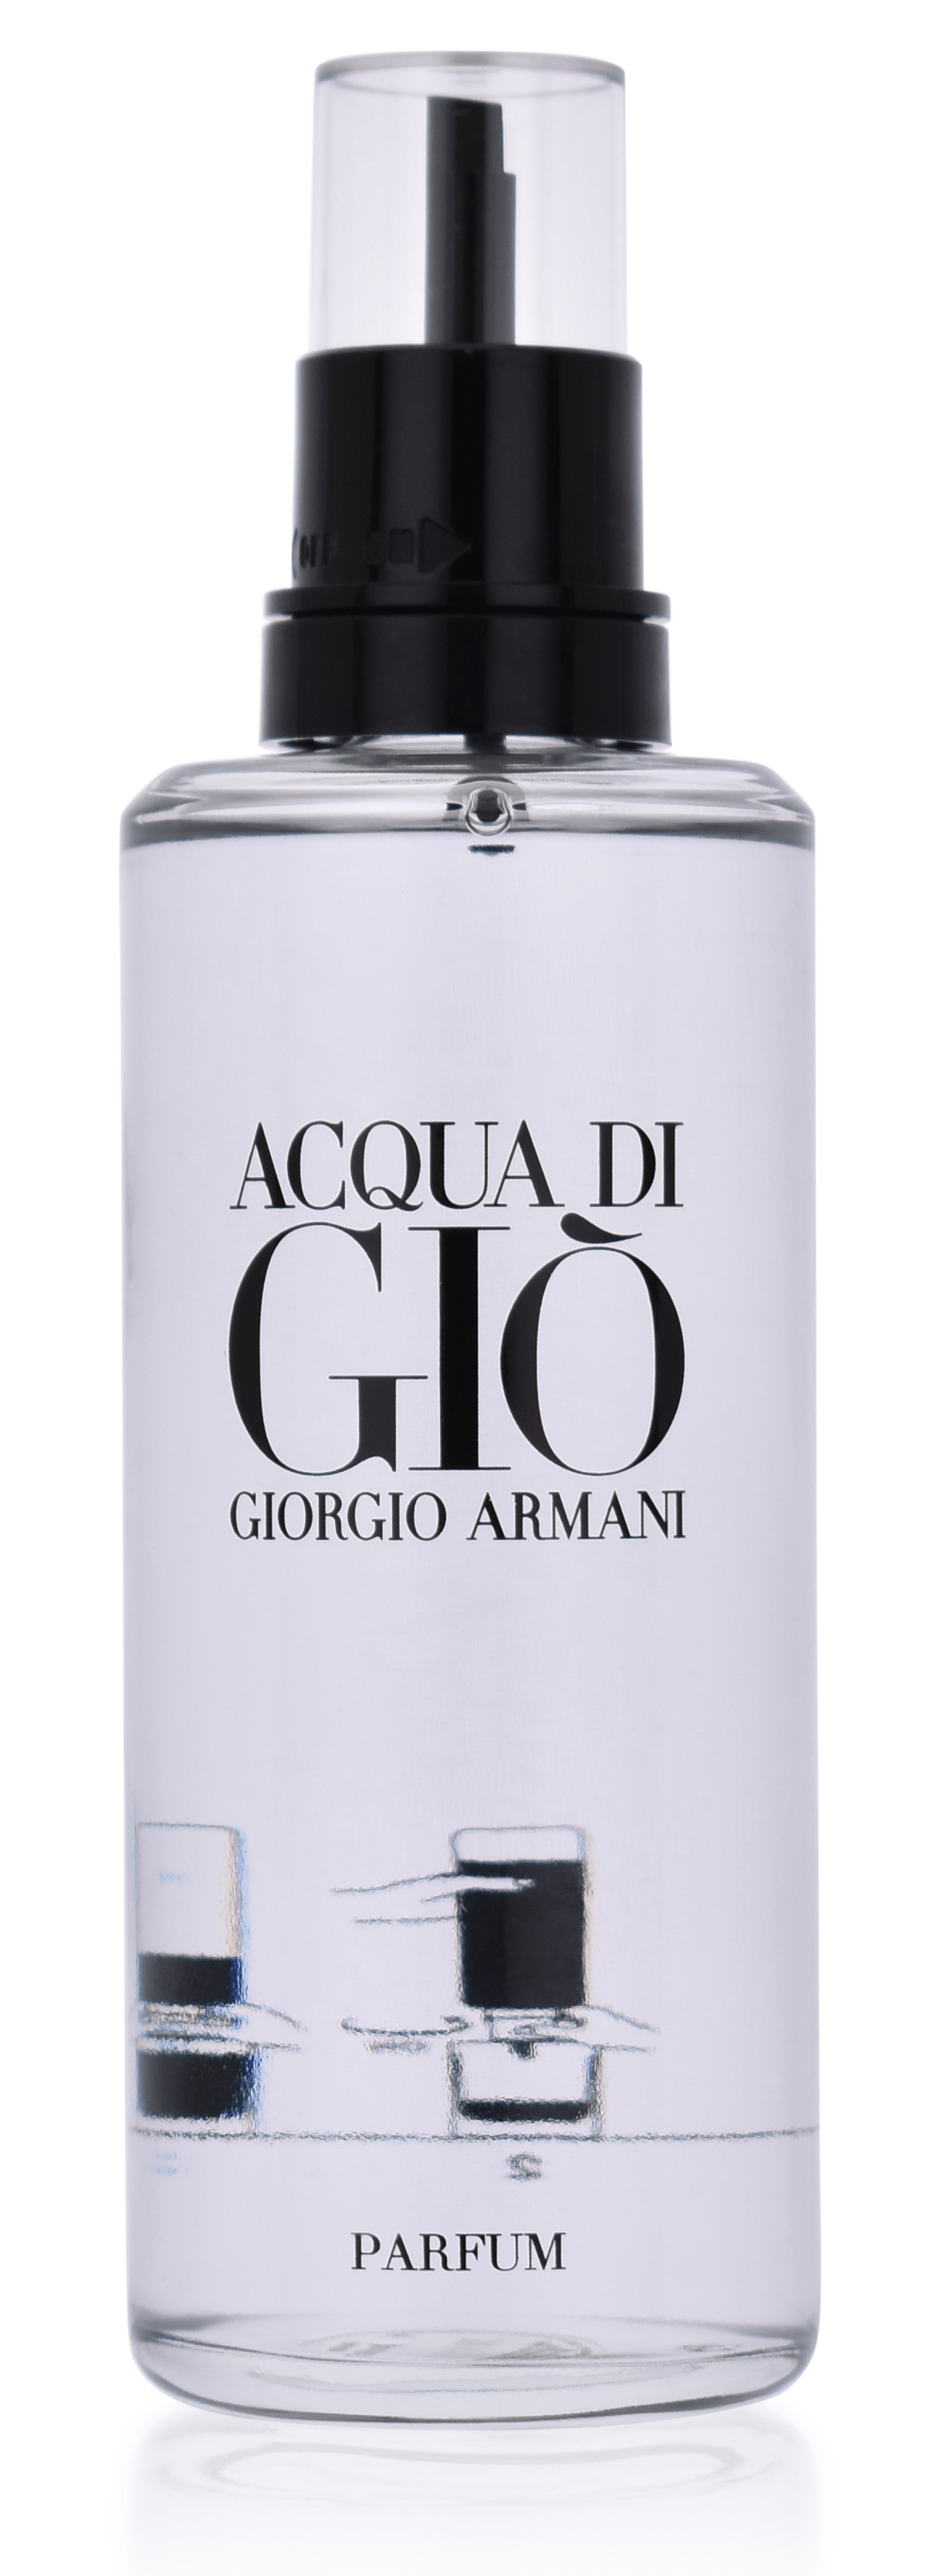 Armani Acqua di Gio Homme 150 ml Parfum refill